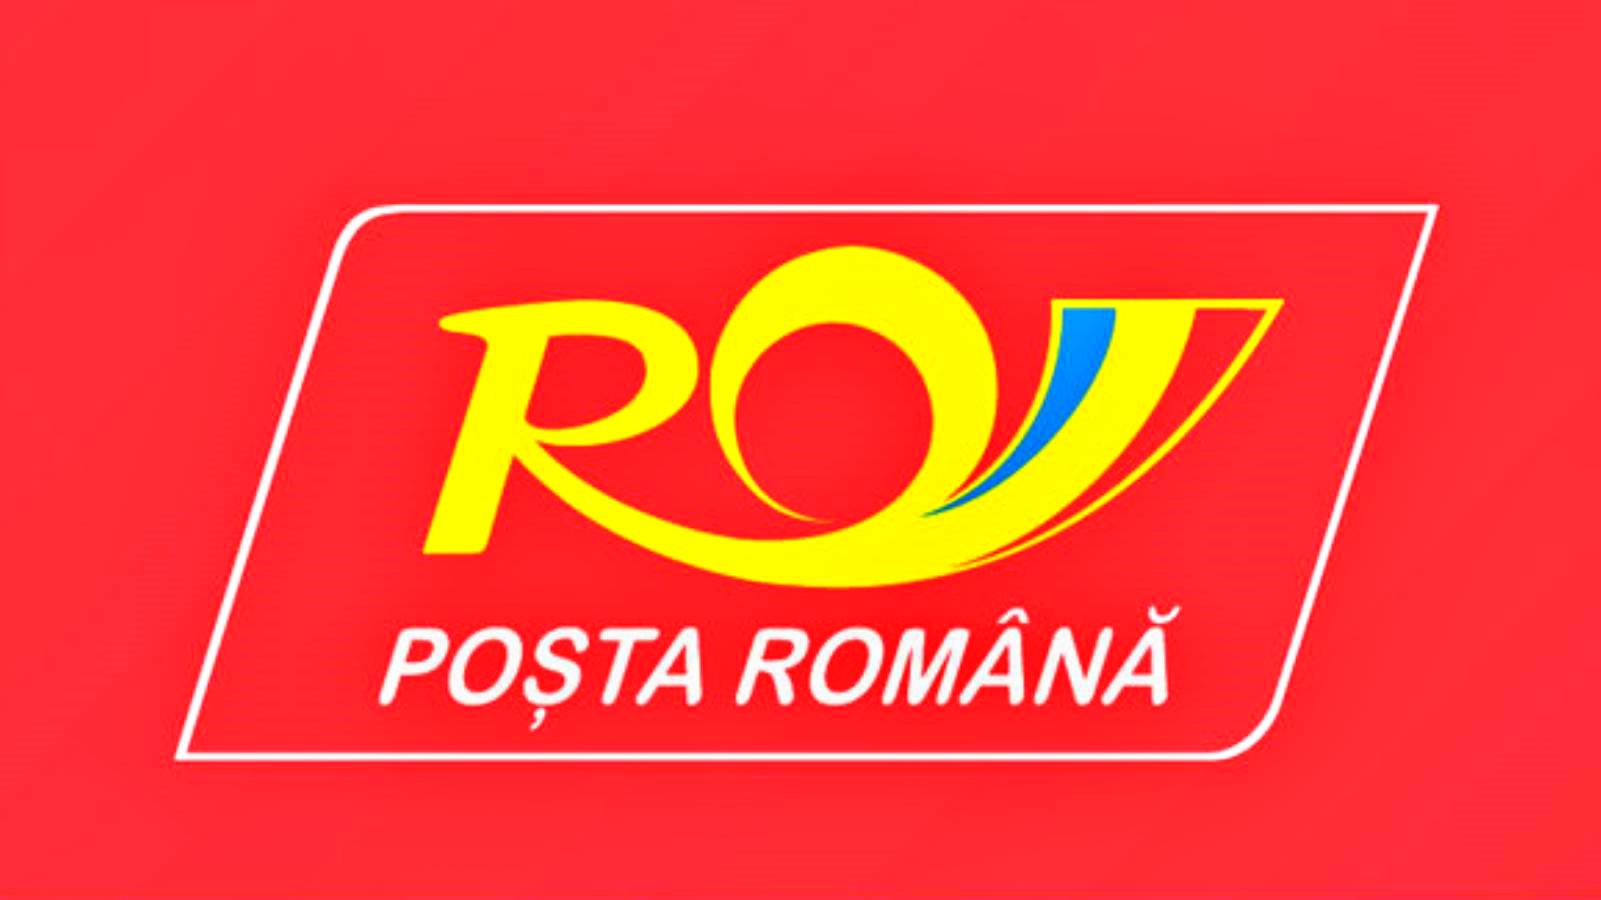 Applicazione di tracciamento dei pacchi postali rumeni